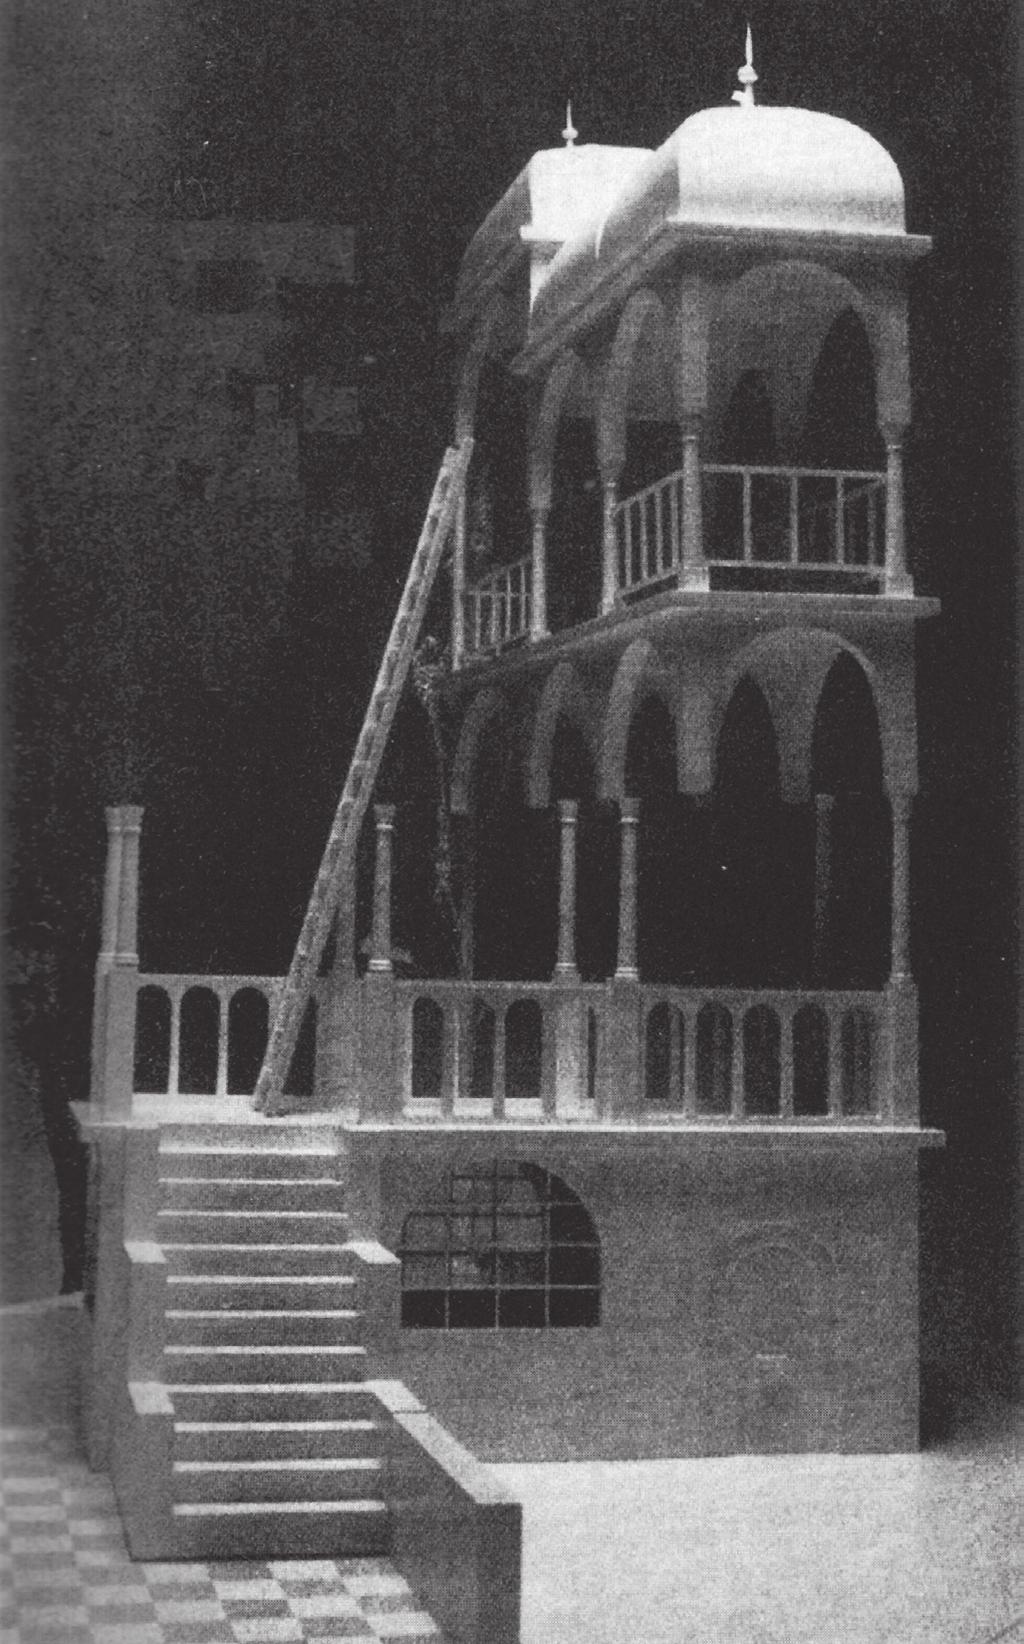 Οι αδύνατοι κόσμοι του Escher ενέπνευσαν πολλούς καλλιτέχνες (εικ. 24-31). Είναι πολλοί επίσης οι μελετητές του έργου του. Ο Sandre der Prete έκανε μια εκτενή μελέτη για το έργο «Belvédère» (εικ.